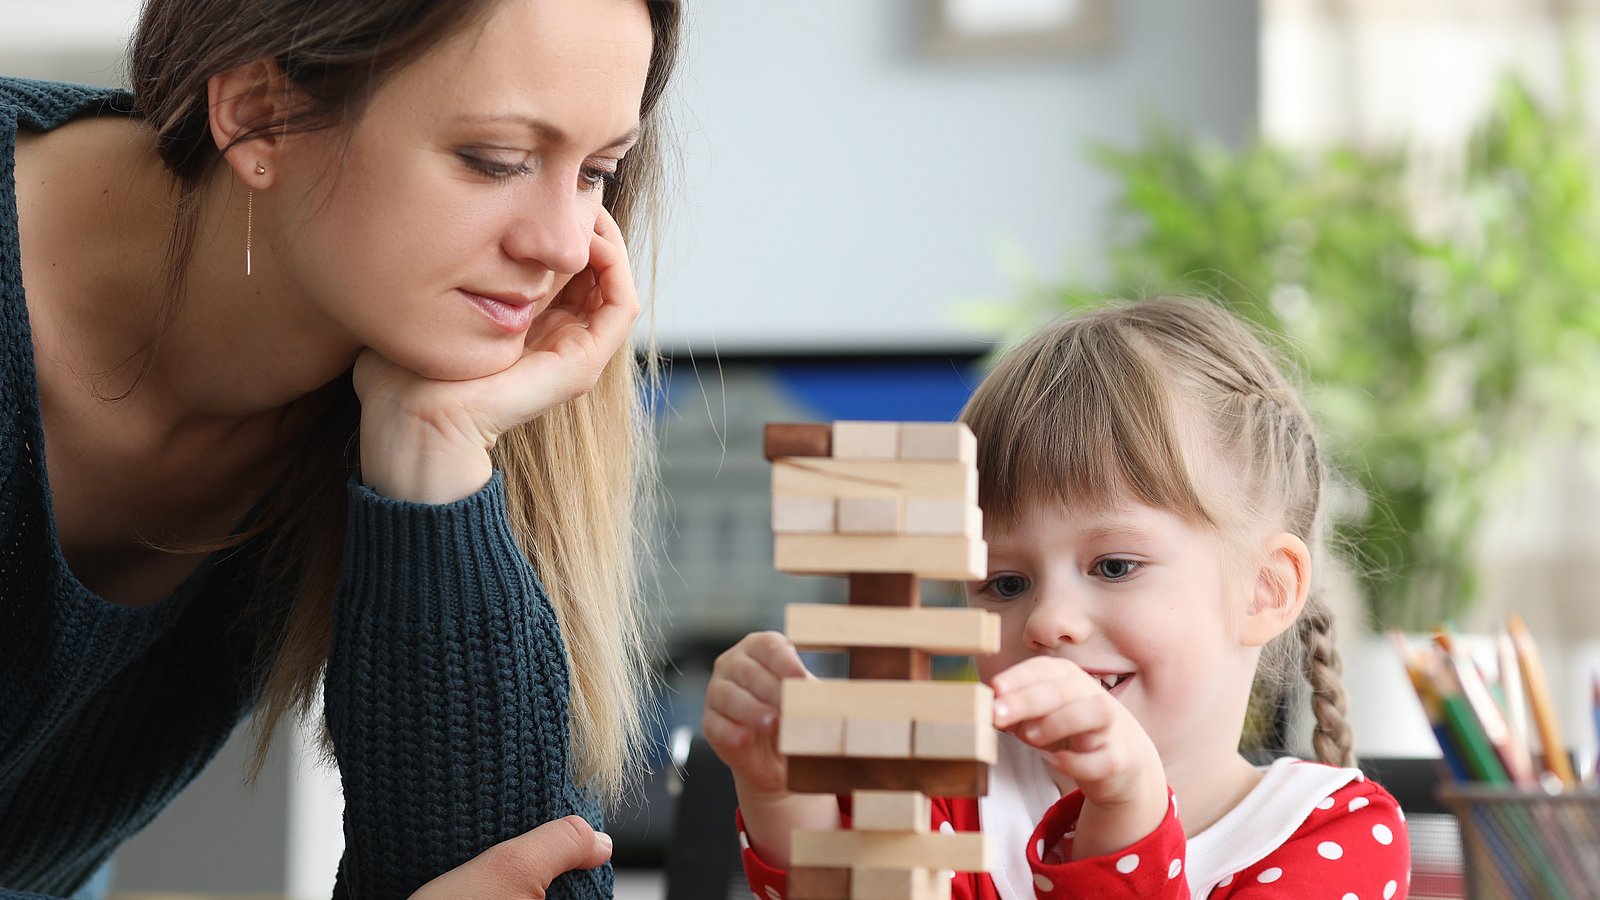 Kind und Frau bauen einen Holzspiel-Turm.